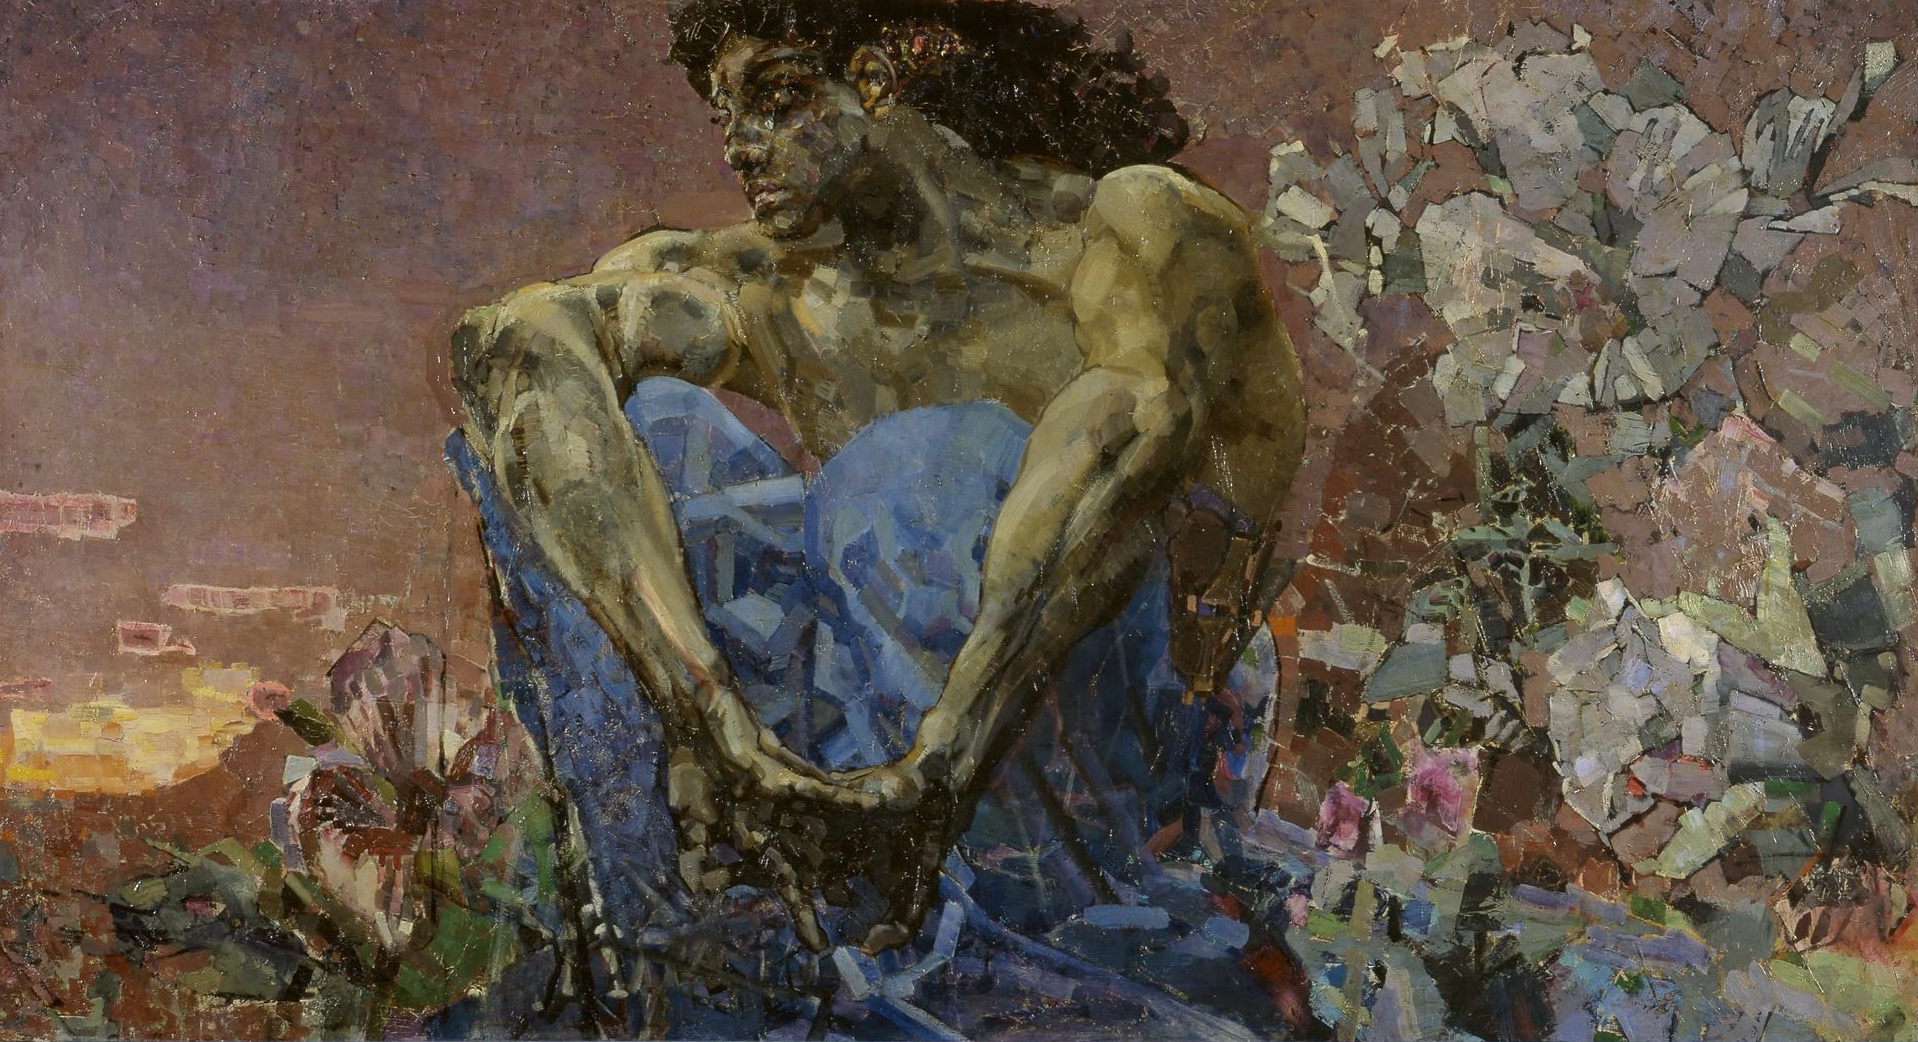 Demonio Sentado en un Jardín by Mikhail Vrubel - 1890 Galería Estatal Tretiakov